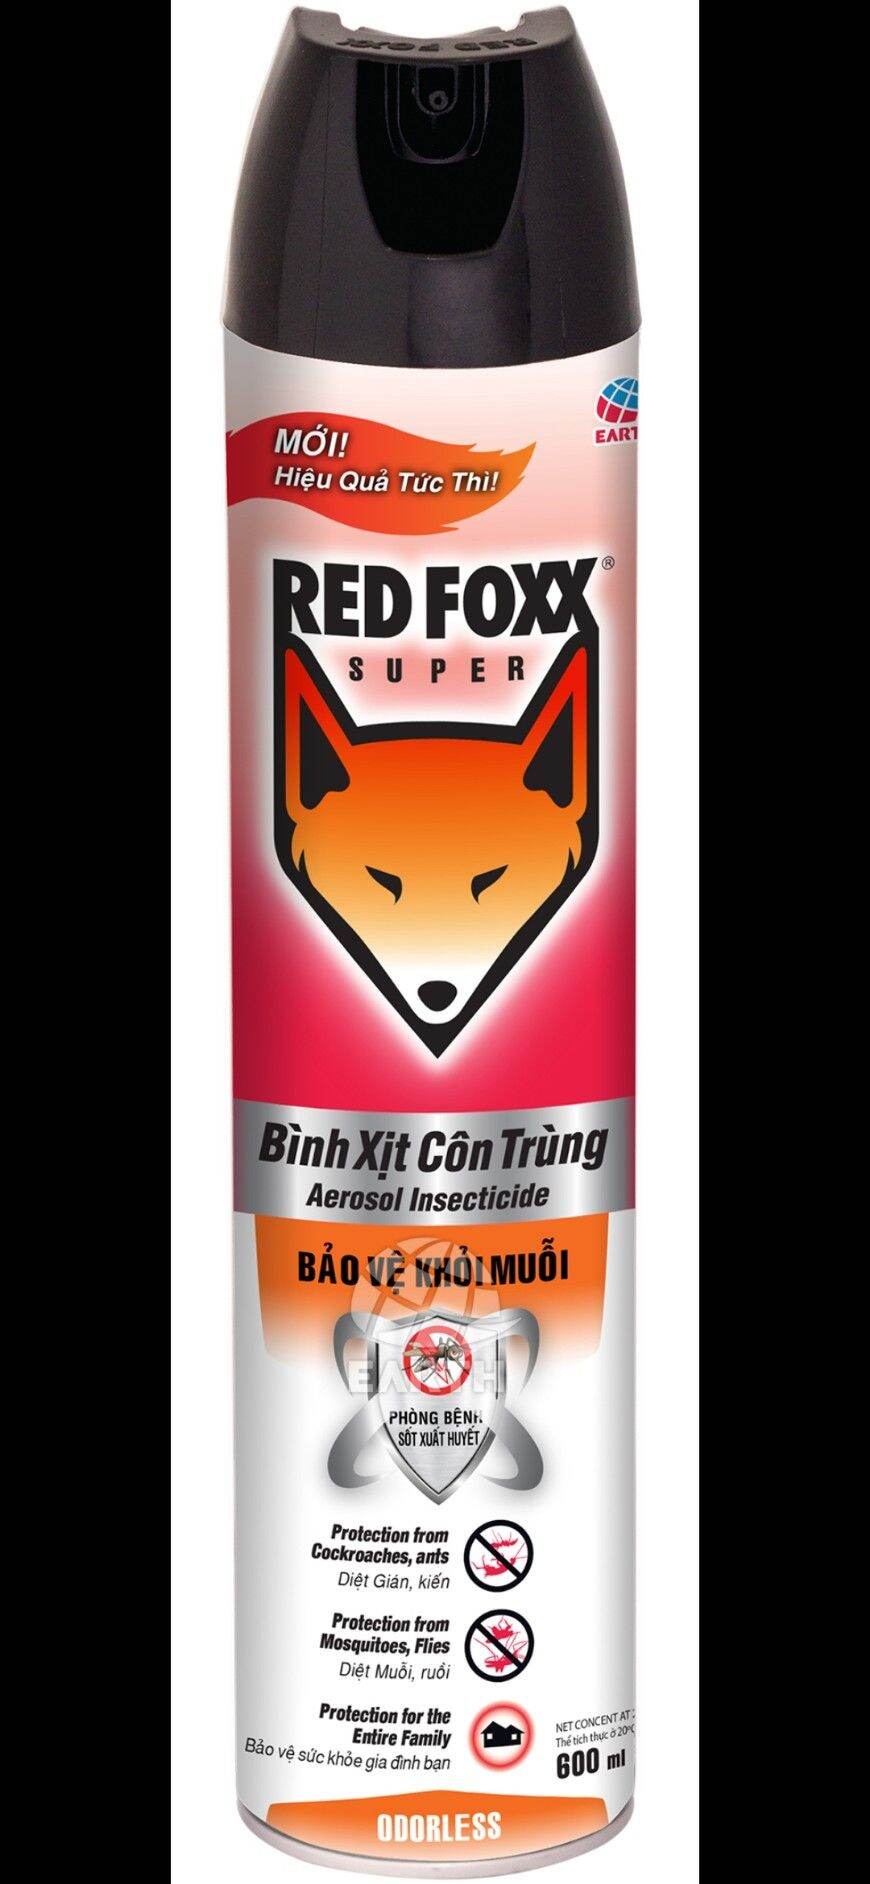 Bình xịt côn trùng RED FOXX - Hương Không mùi 600ml, 300ml